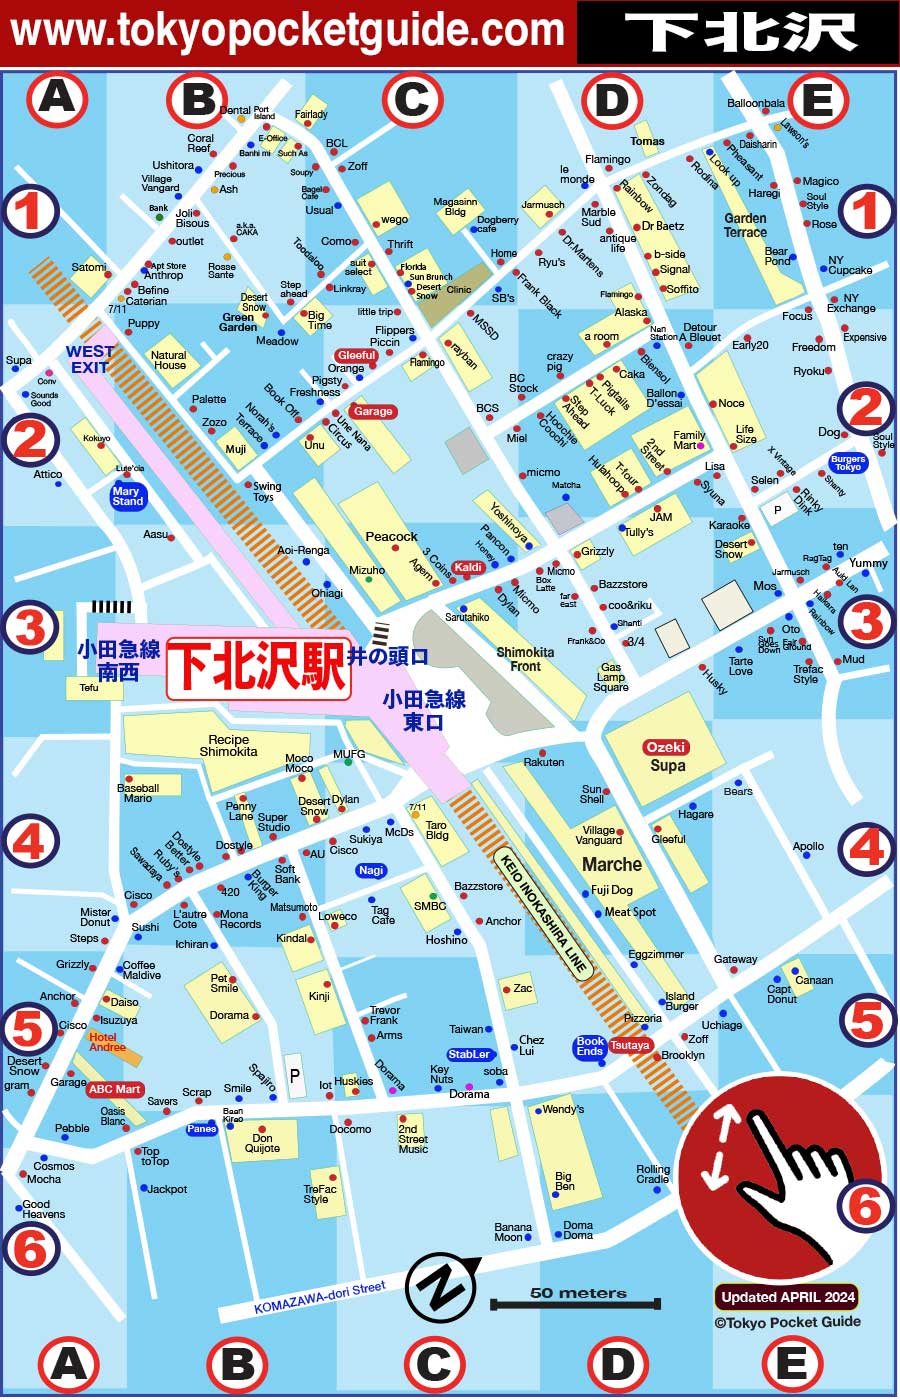 東京 下北沢 わかりやすい ショッピング マップ 下北沢 地図 Tokyo Pocket Guide